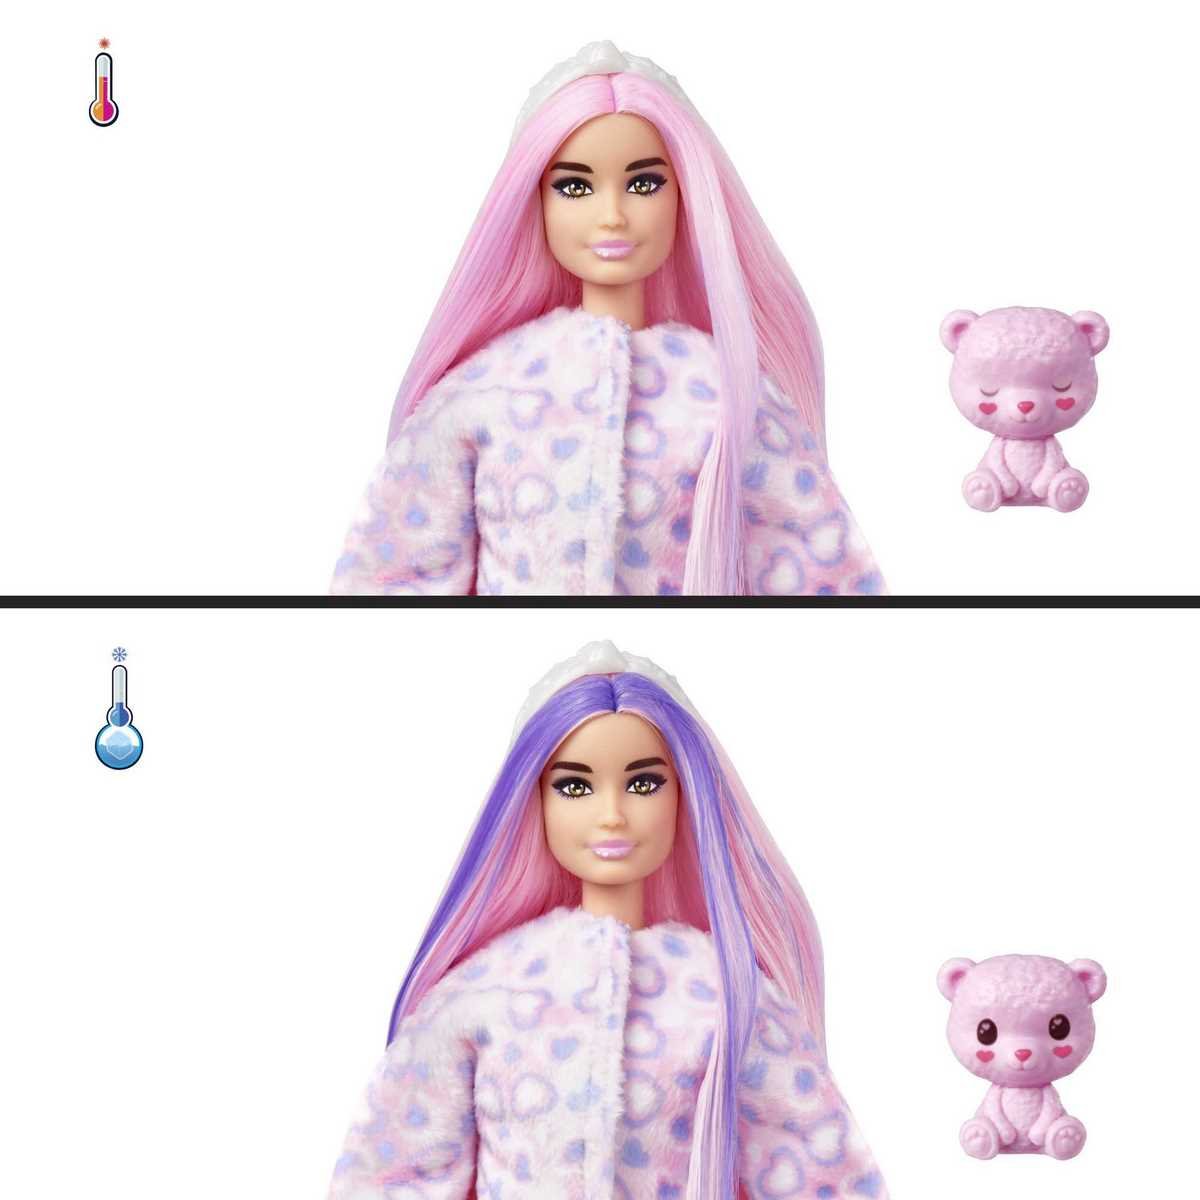 Barbie Cutie Reveal Ourson - La Grande Récré